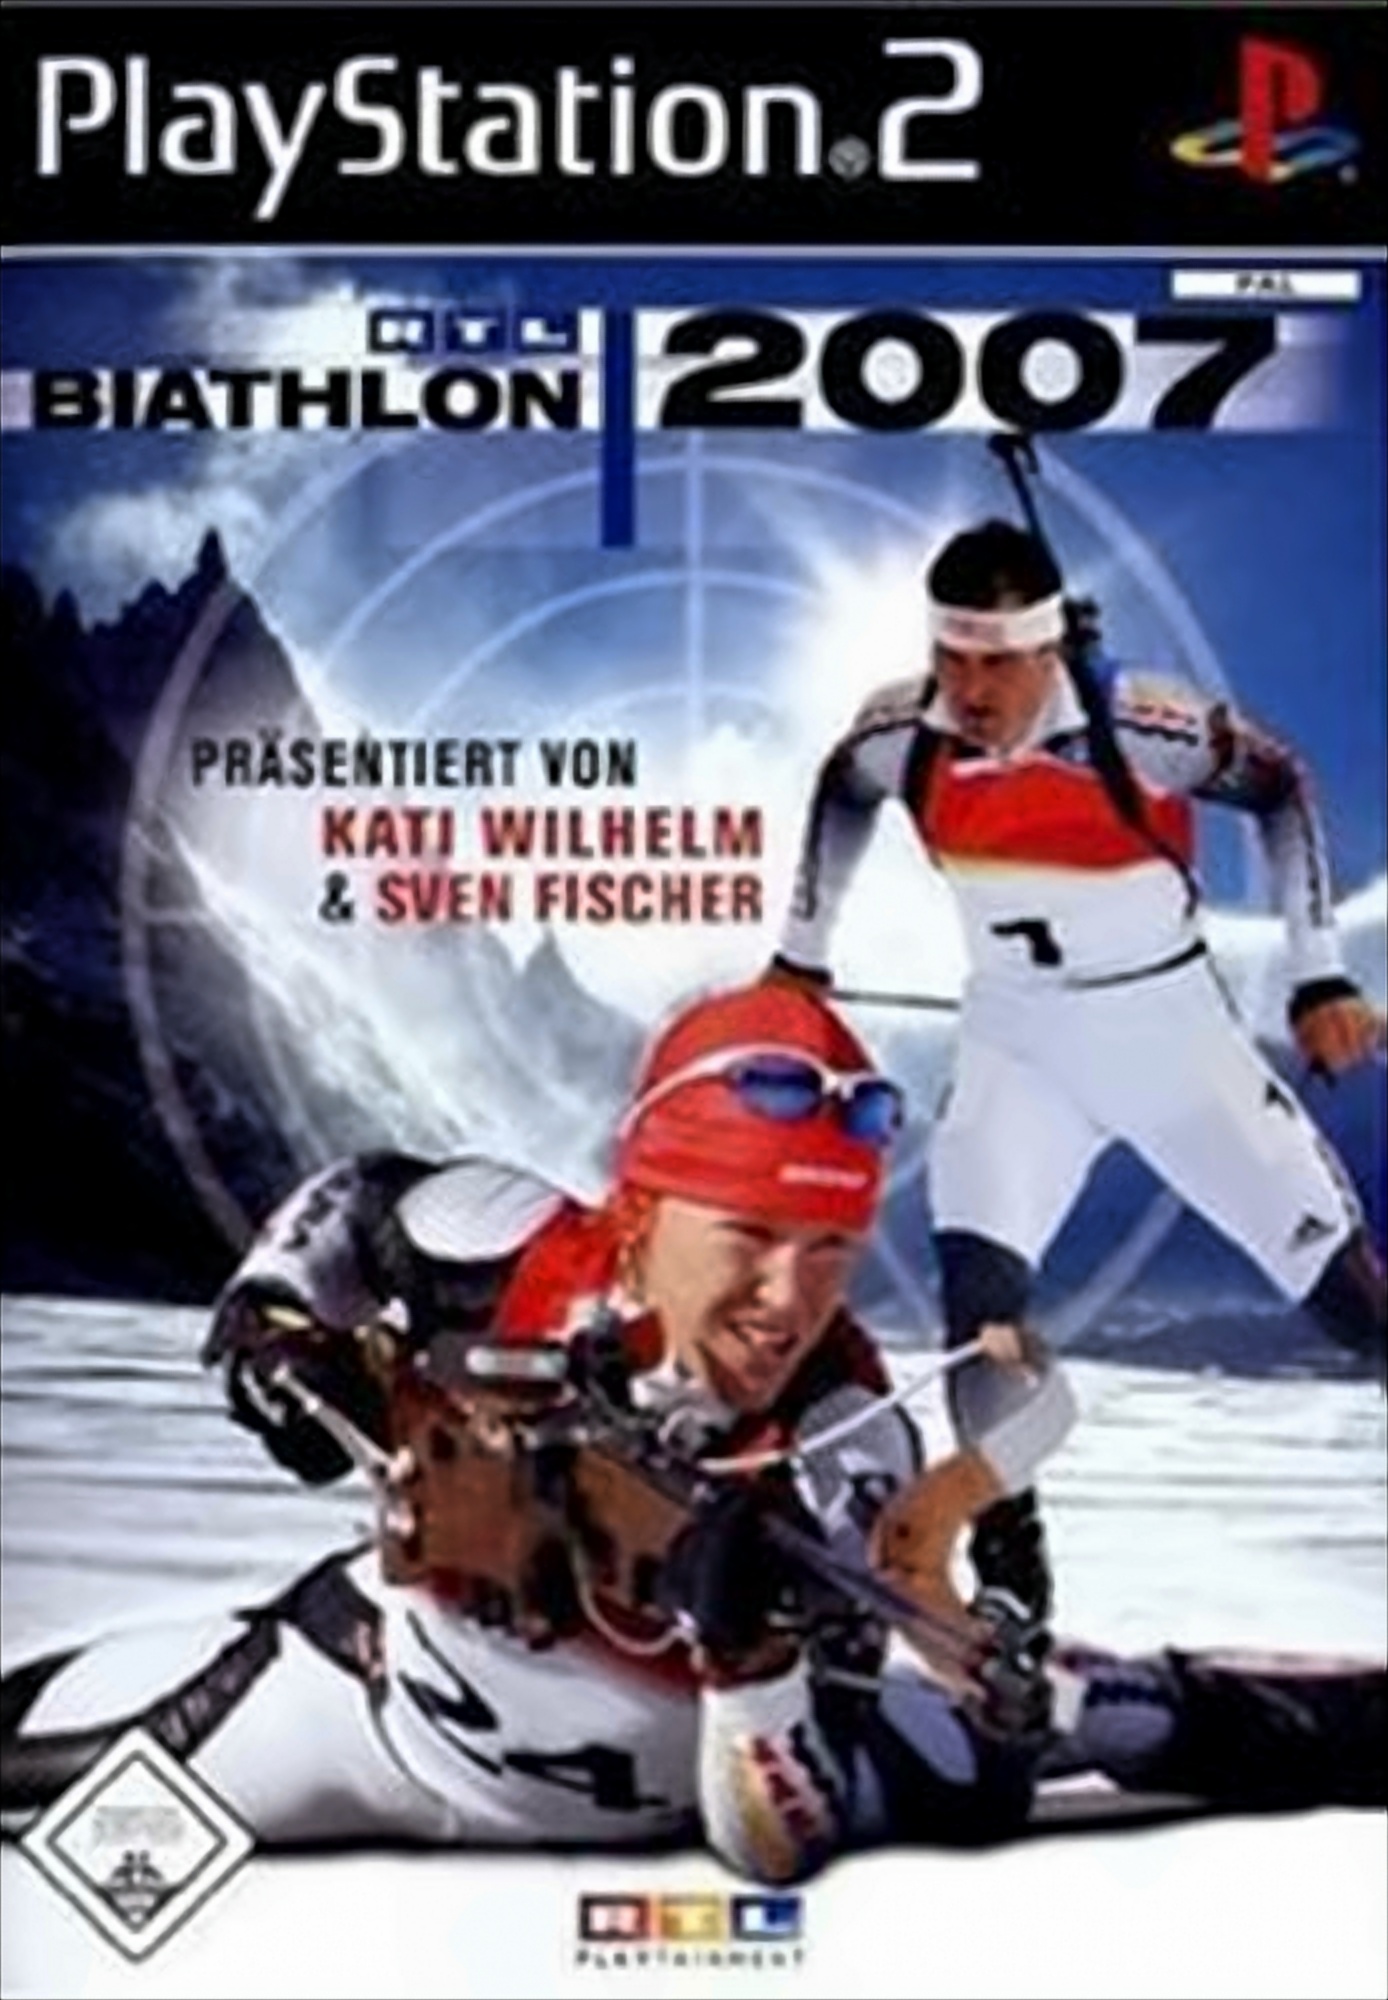 RTL Biathlon 2007 von RTL Games